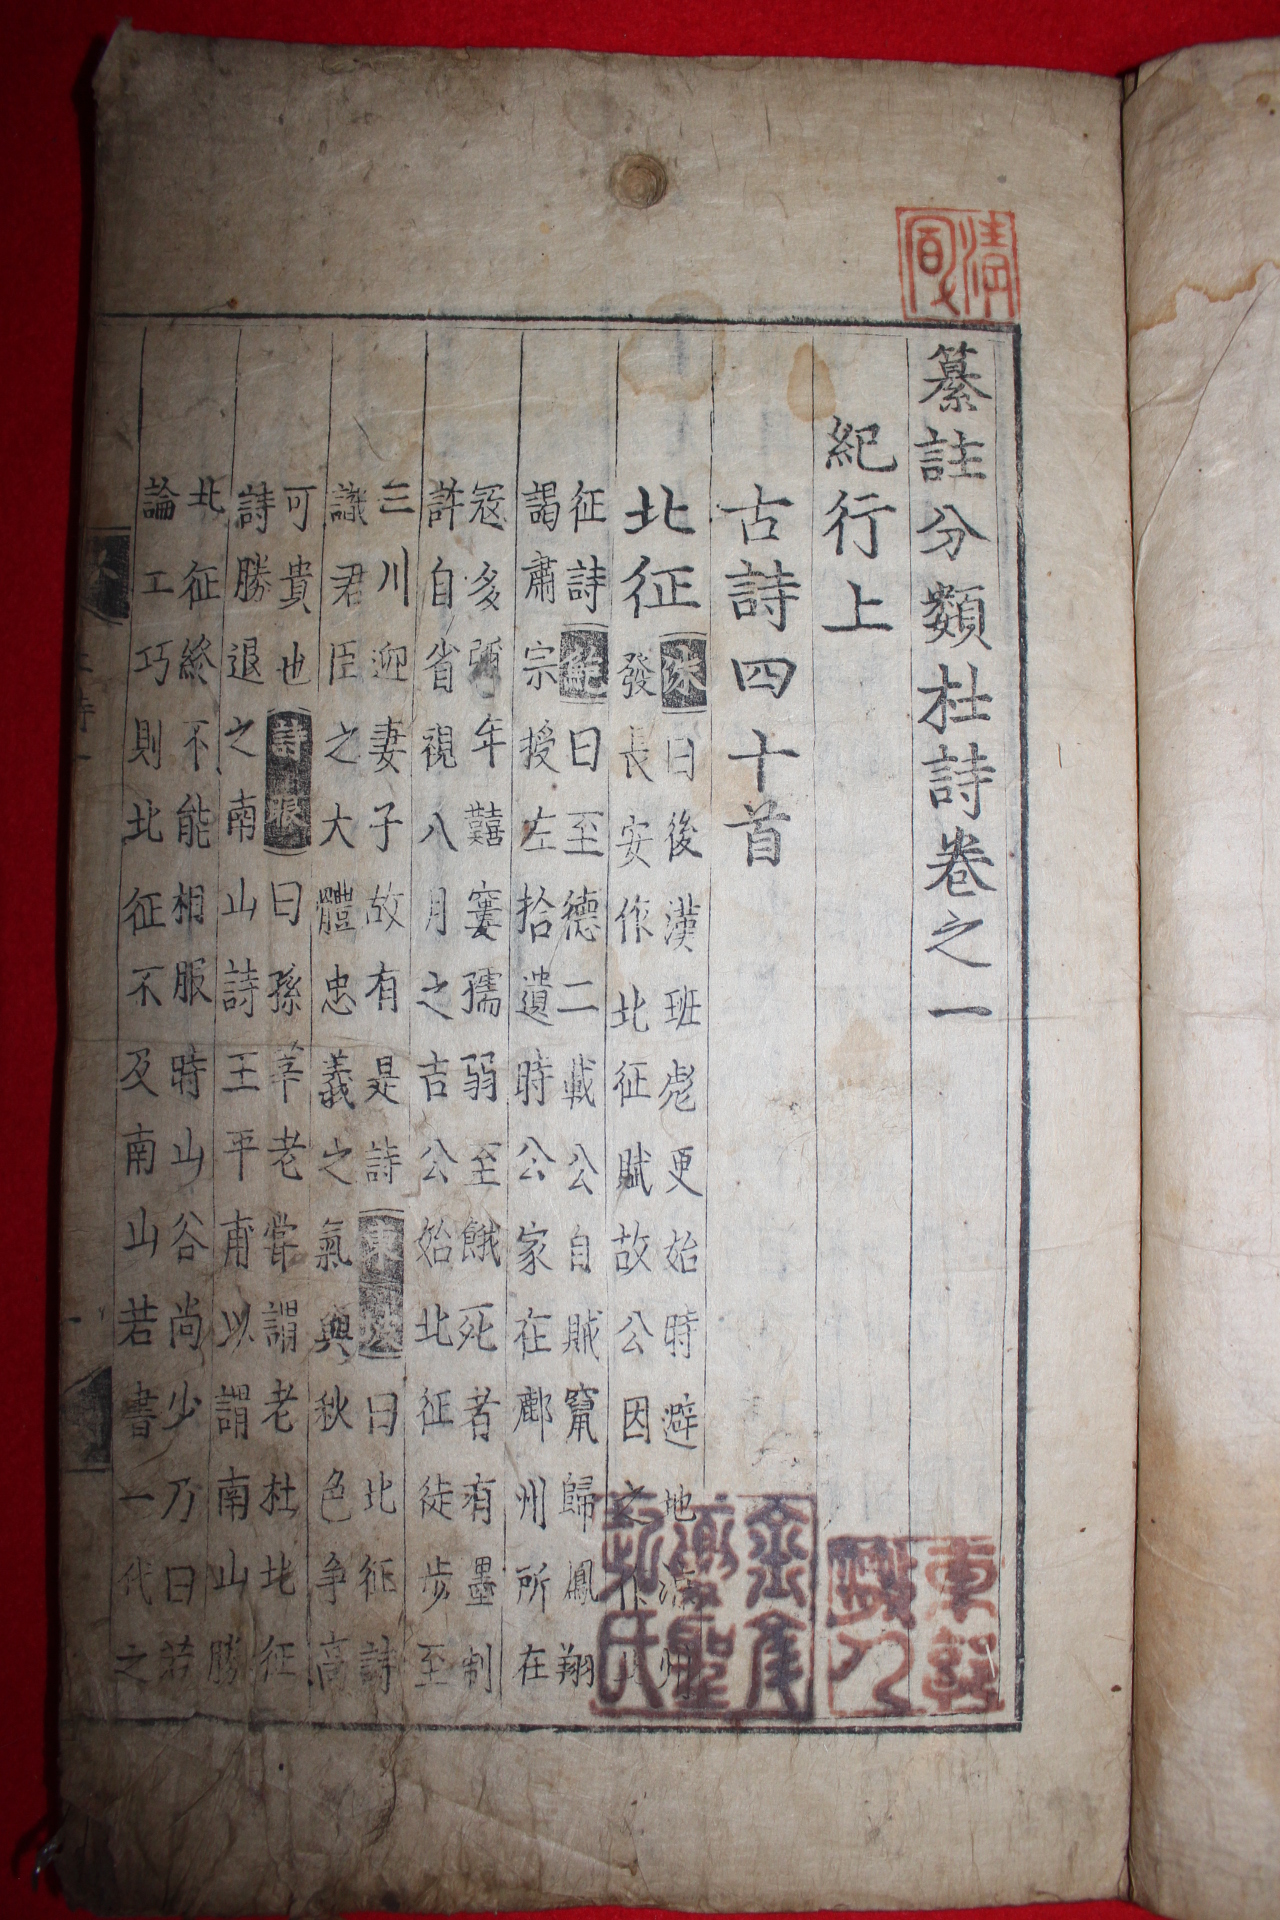 1500년대 금속활자본(초주갑인자) 두보(杜甫) 찬주분류두시(纂註分類杜詩)권1   1책